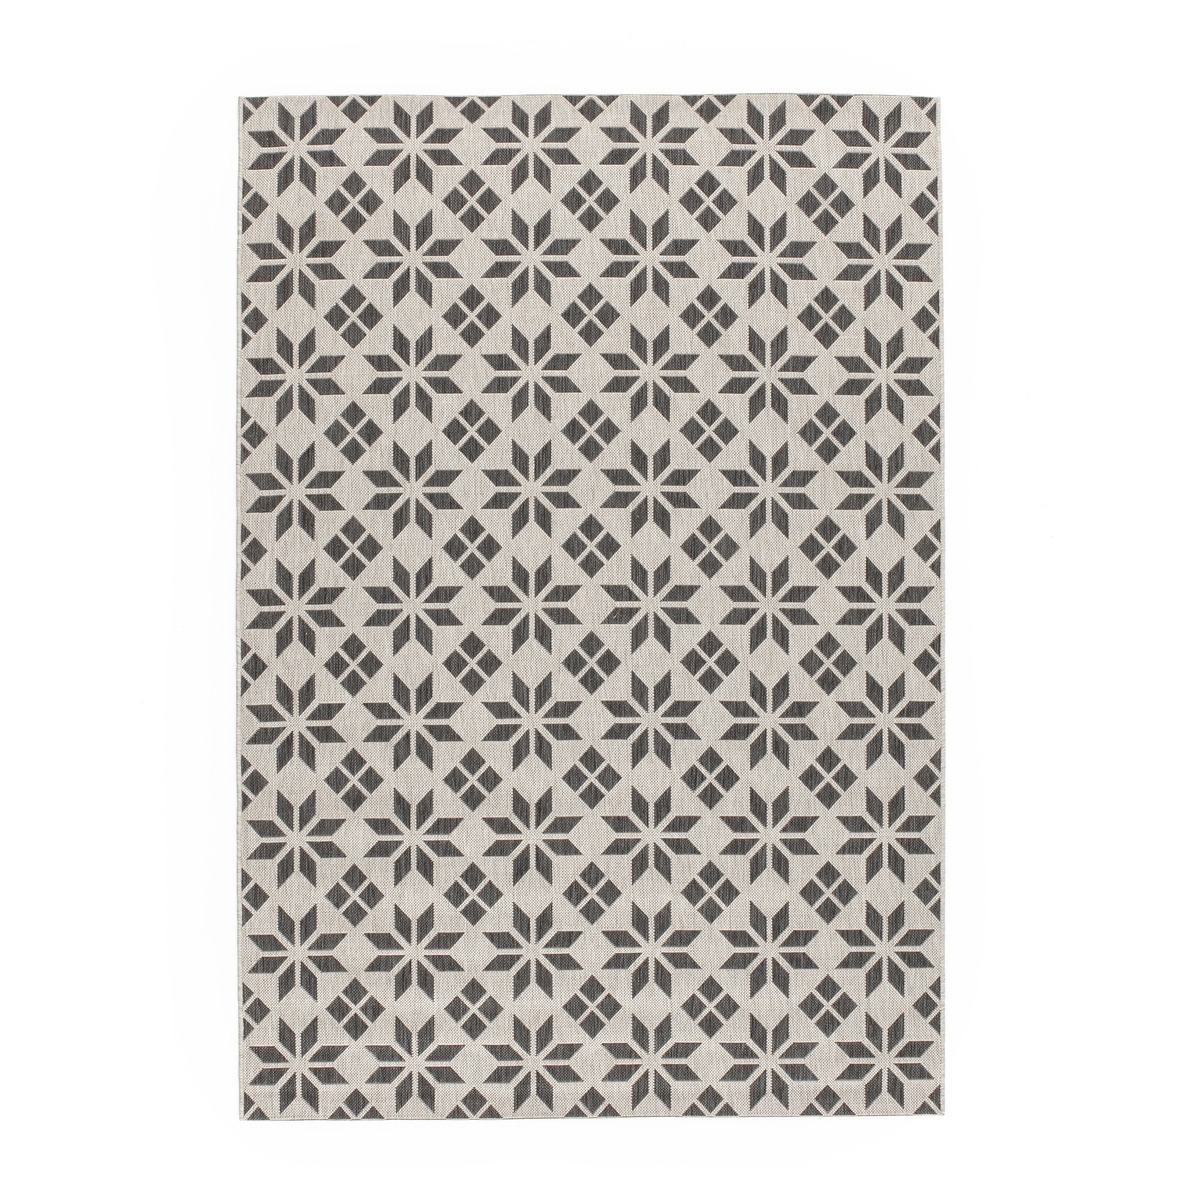 Iswik Star Tile Indoor/Outdoor Flat Rug - image 1